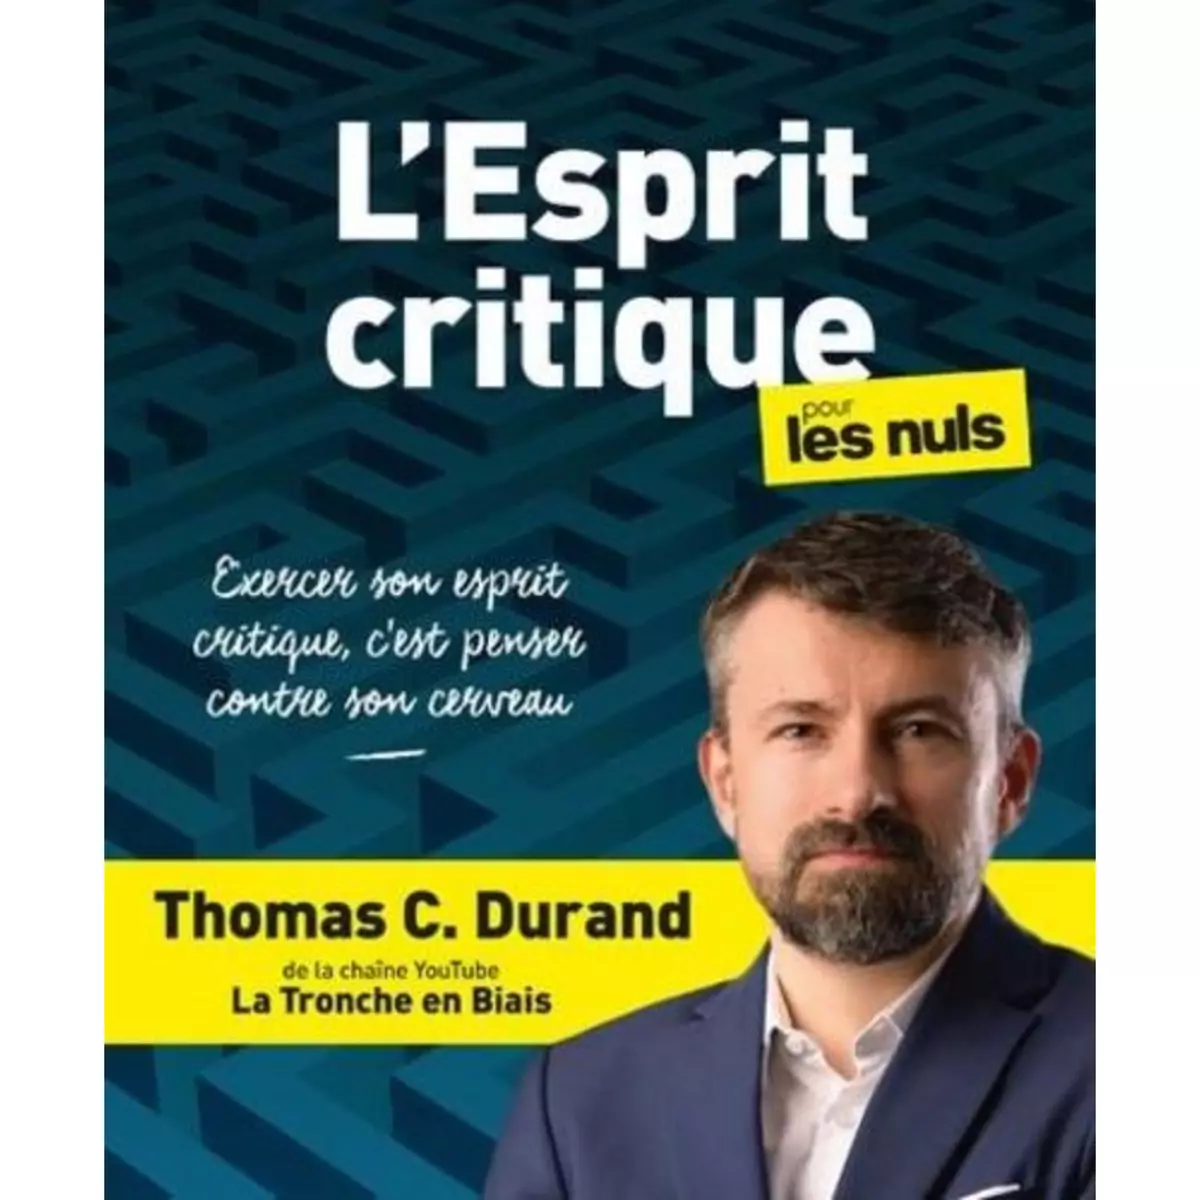  L'ESPRIT CRITIQUE POUR LES NULS, Durand Thomas C.